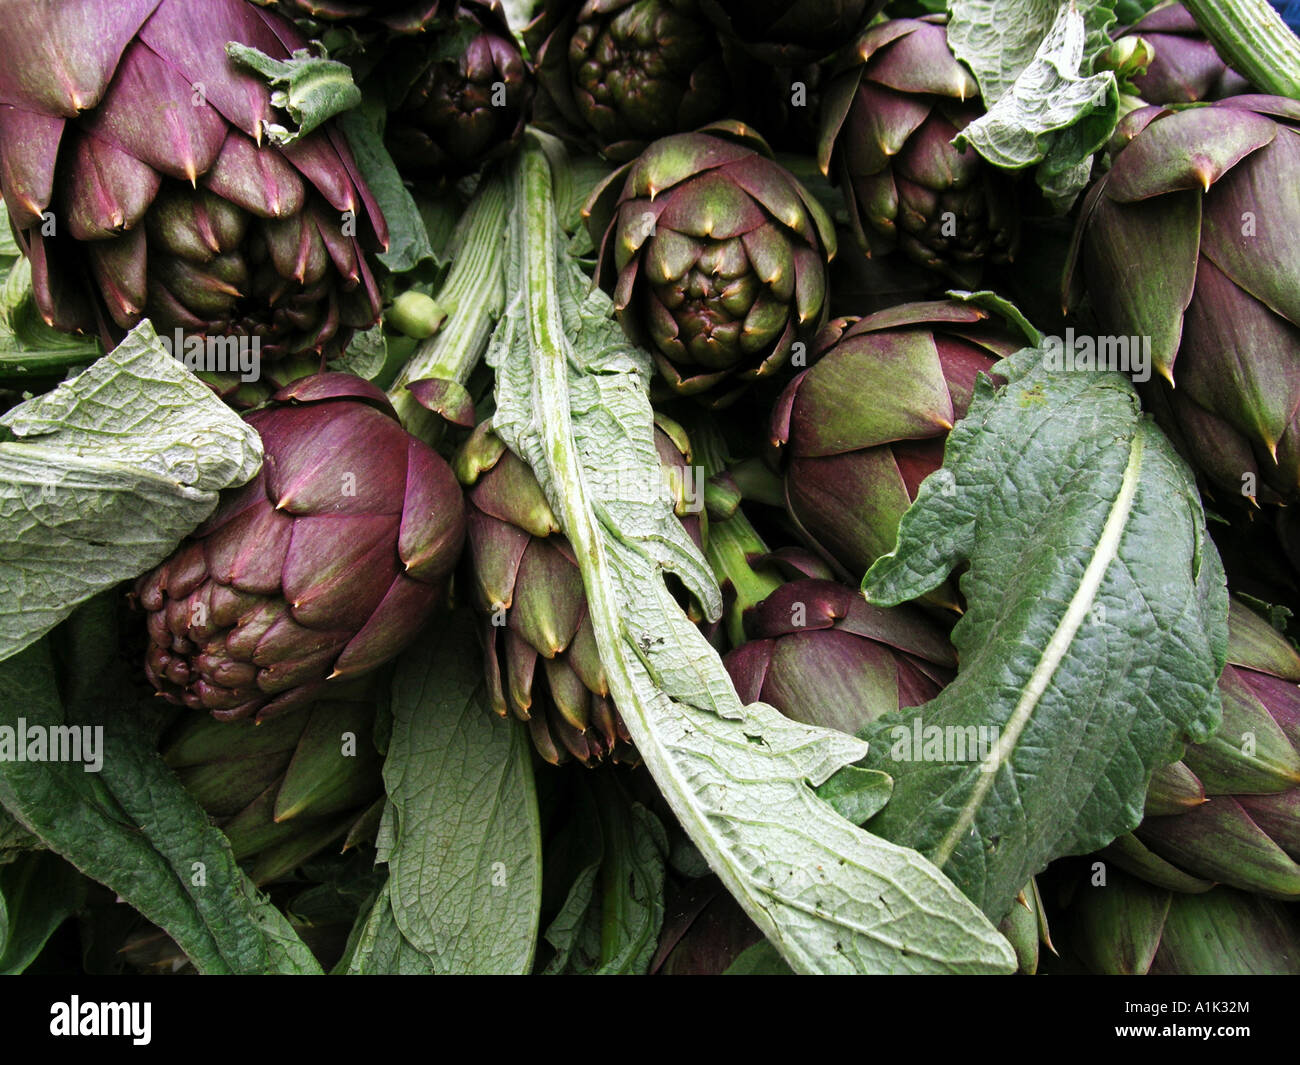 artichokes Stock Photo